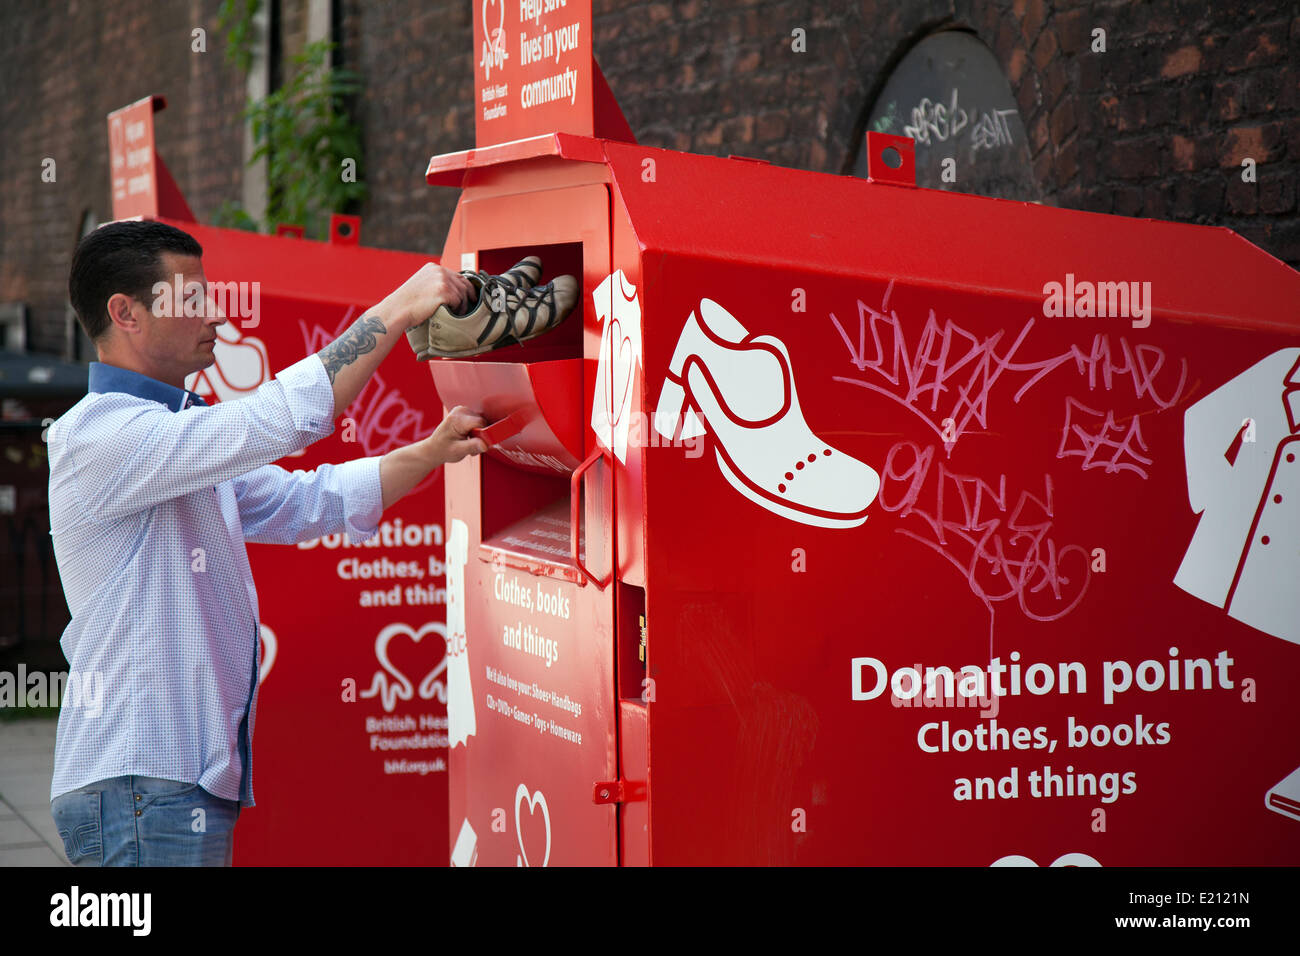 Point de don ; l'homme (MR) Service de bienfaisance ; Réutilisation  Recyclage des vêtements usagés don Faire un don de bienfaisance  bienfaisance vêtements donnant contenant usagé d'occasion donner pauvres  ont besoin d'appuyer